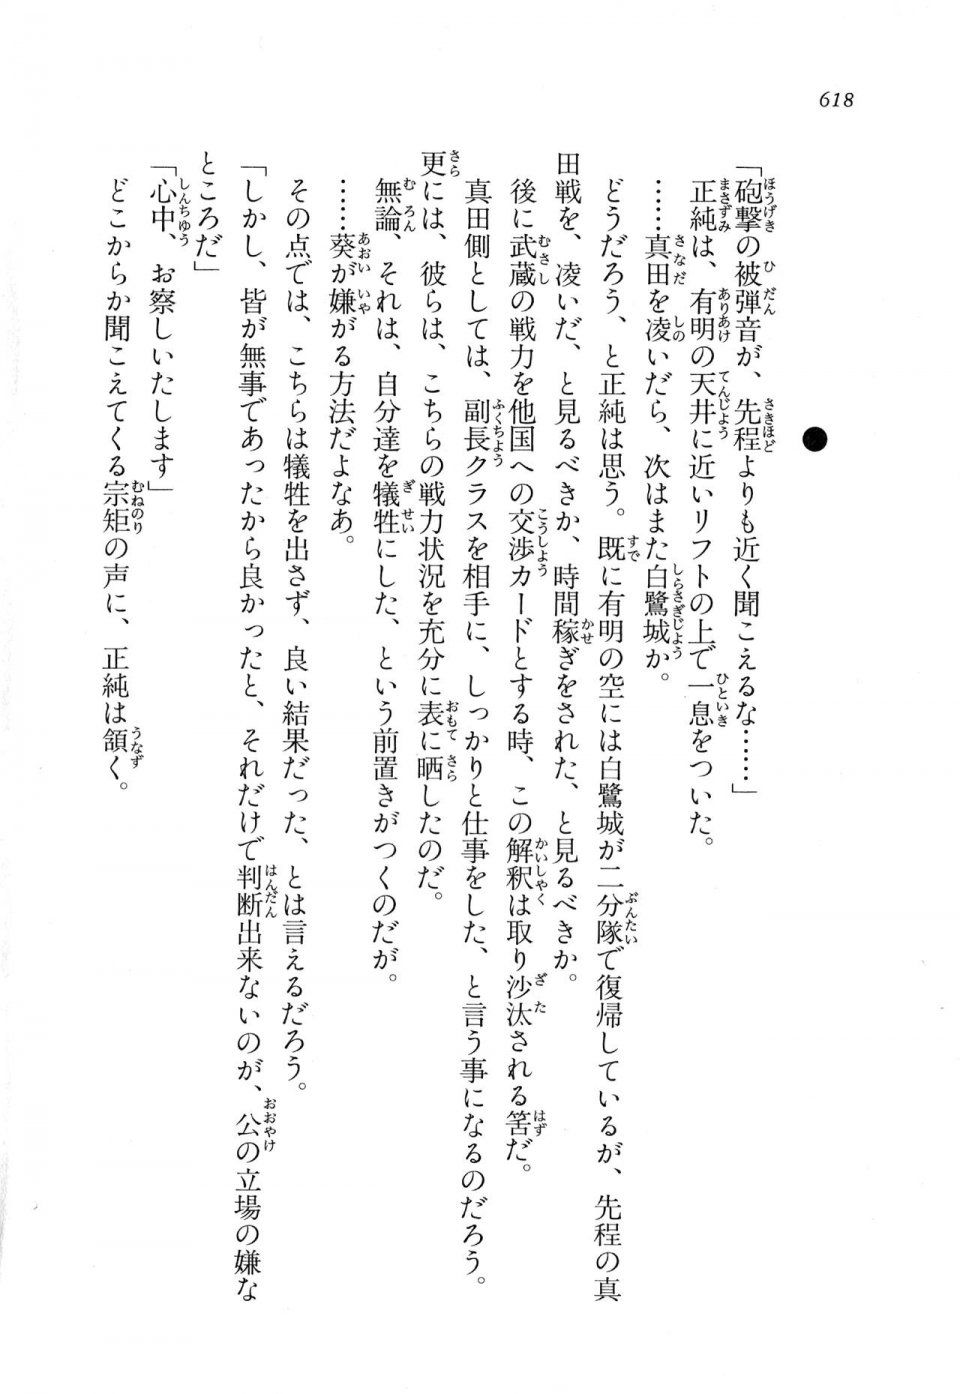 Kyoukai Senjou no Horizon LN Vol 11(5A) - Photo #618